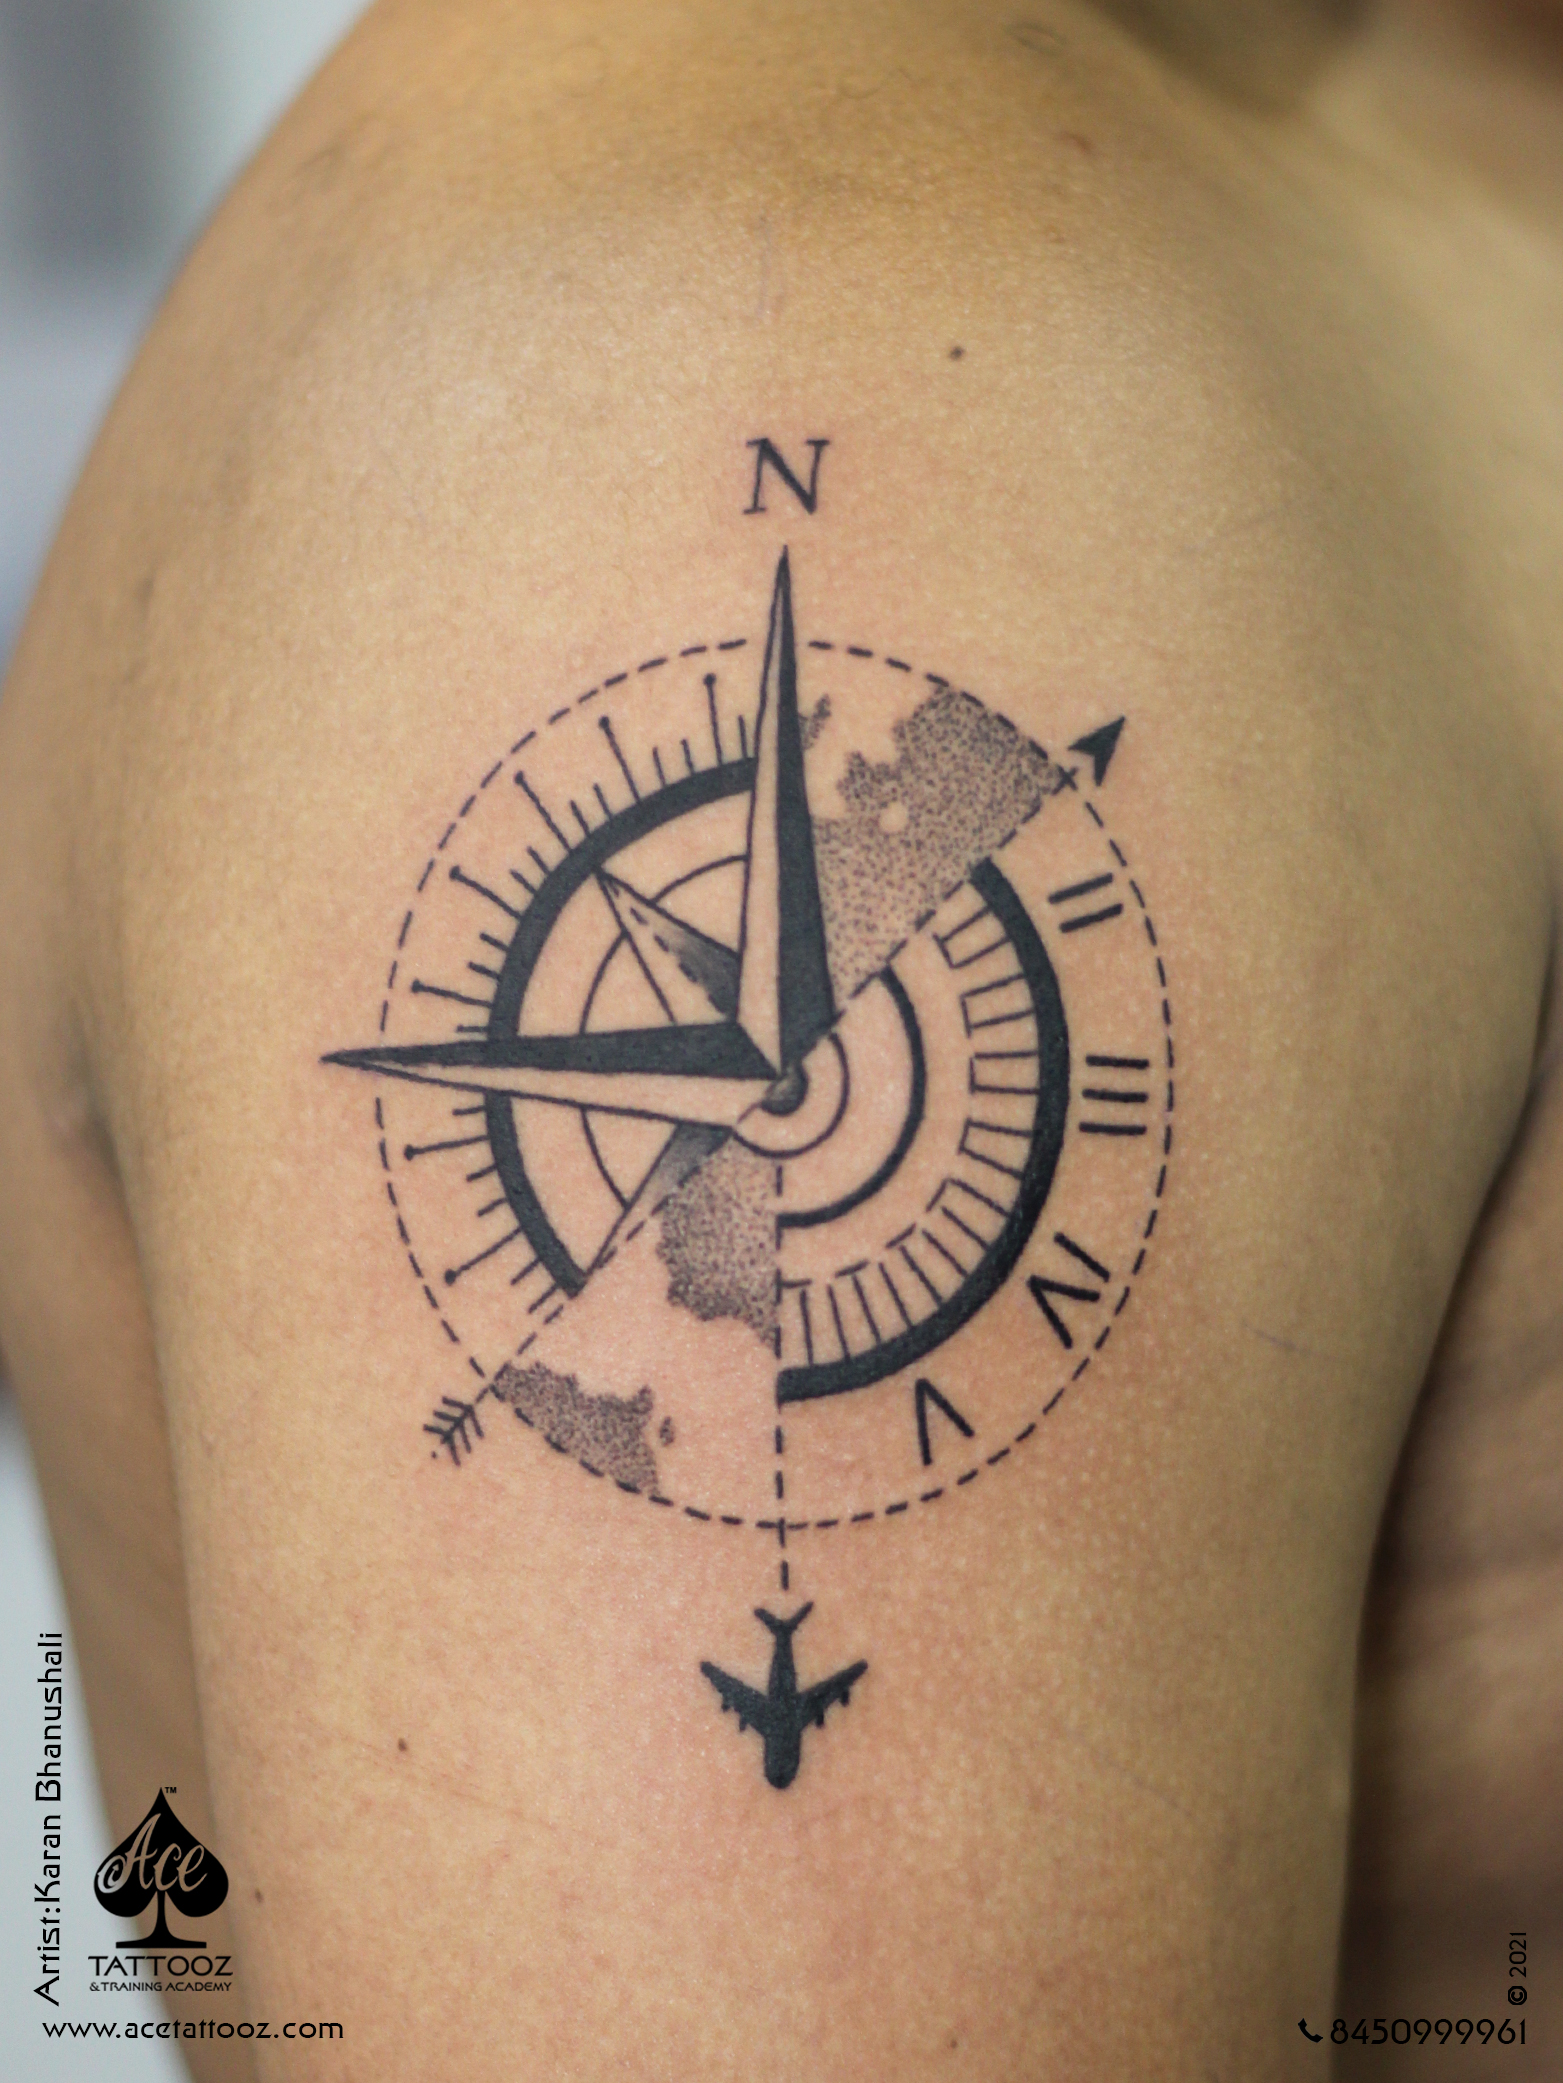 Customized Compass & Travel Tattoo - Ace Tattooz